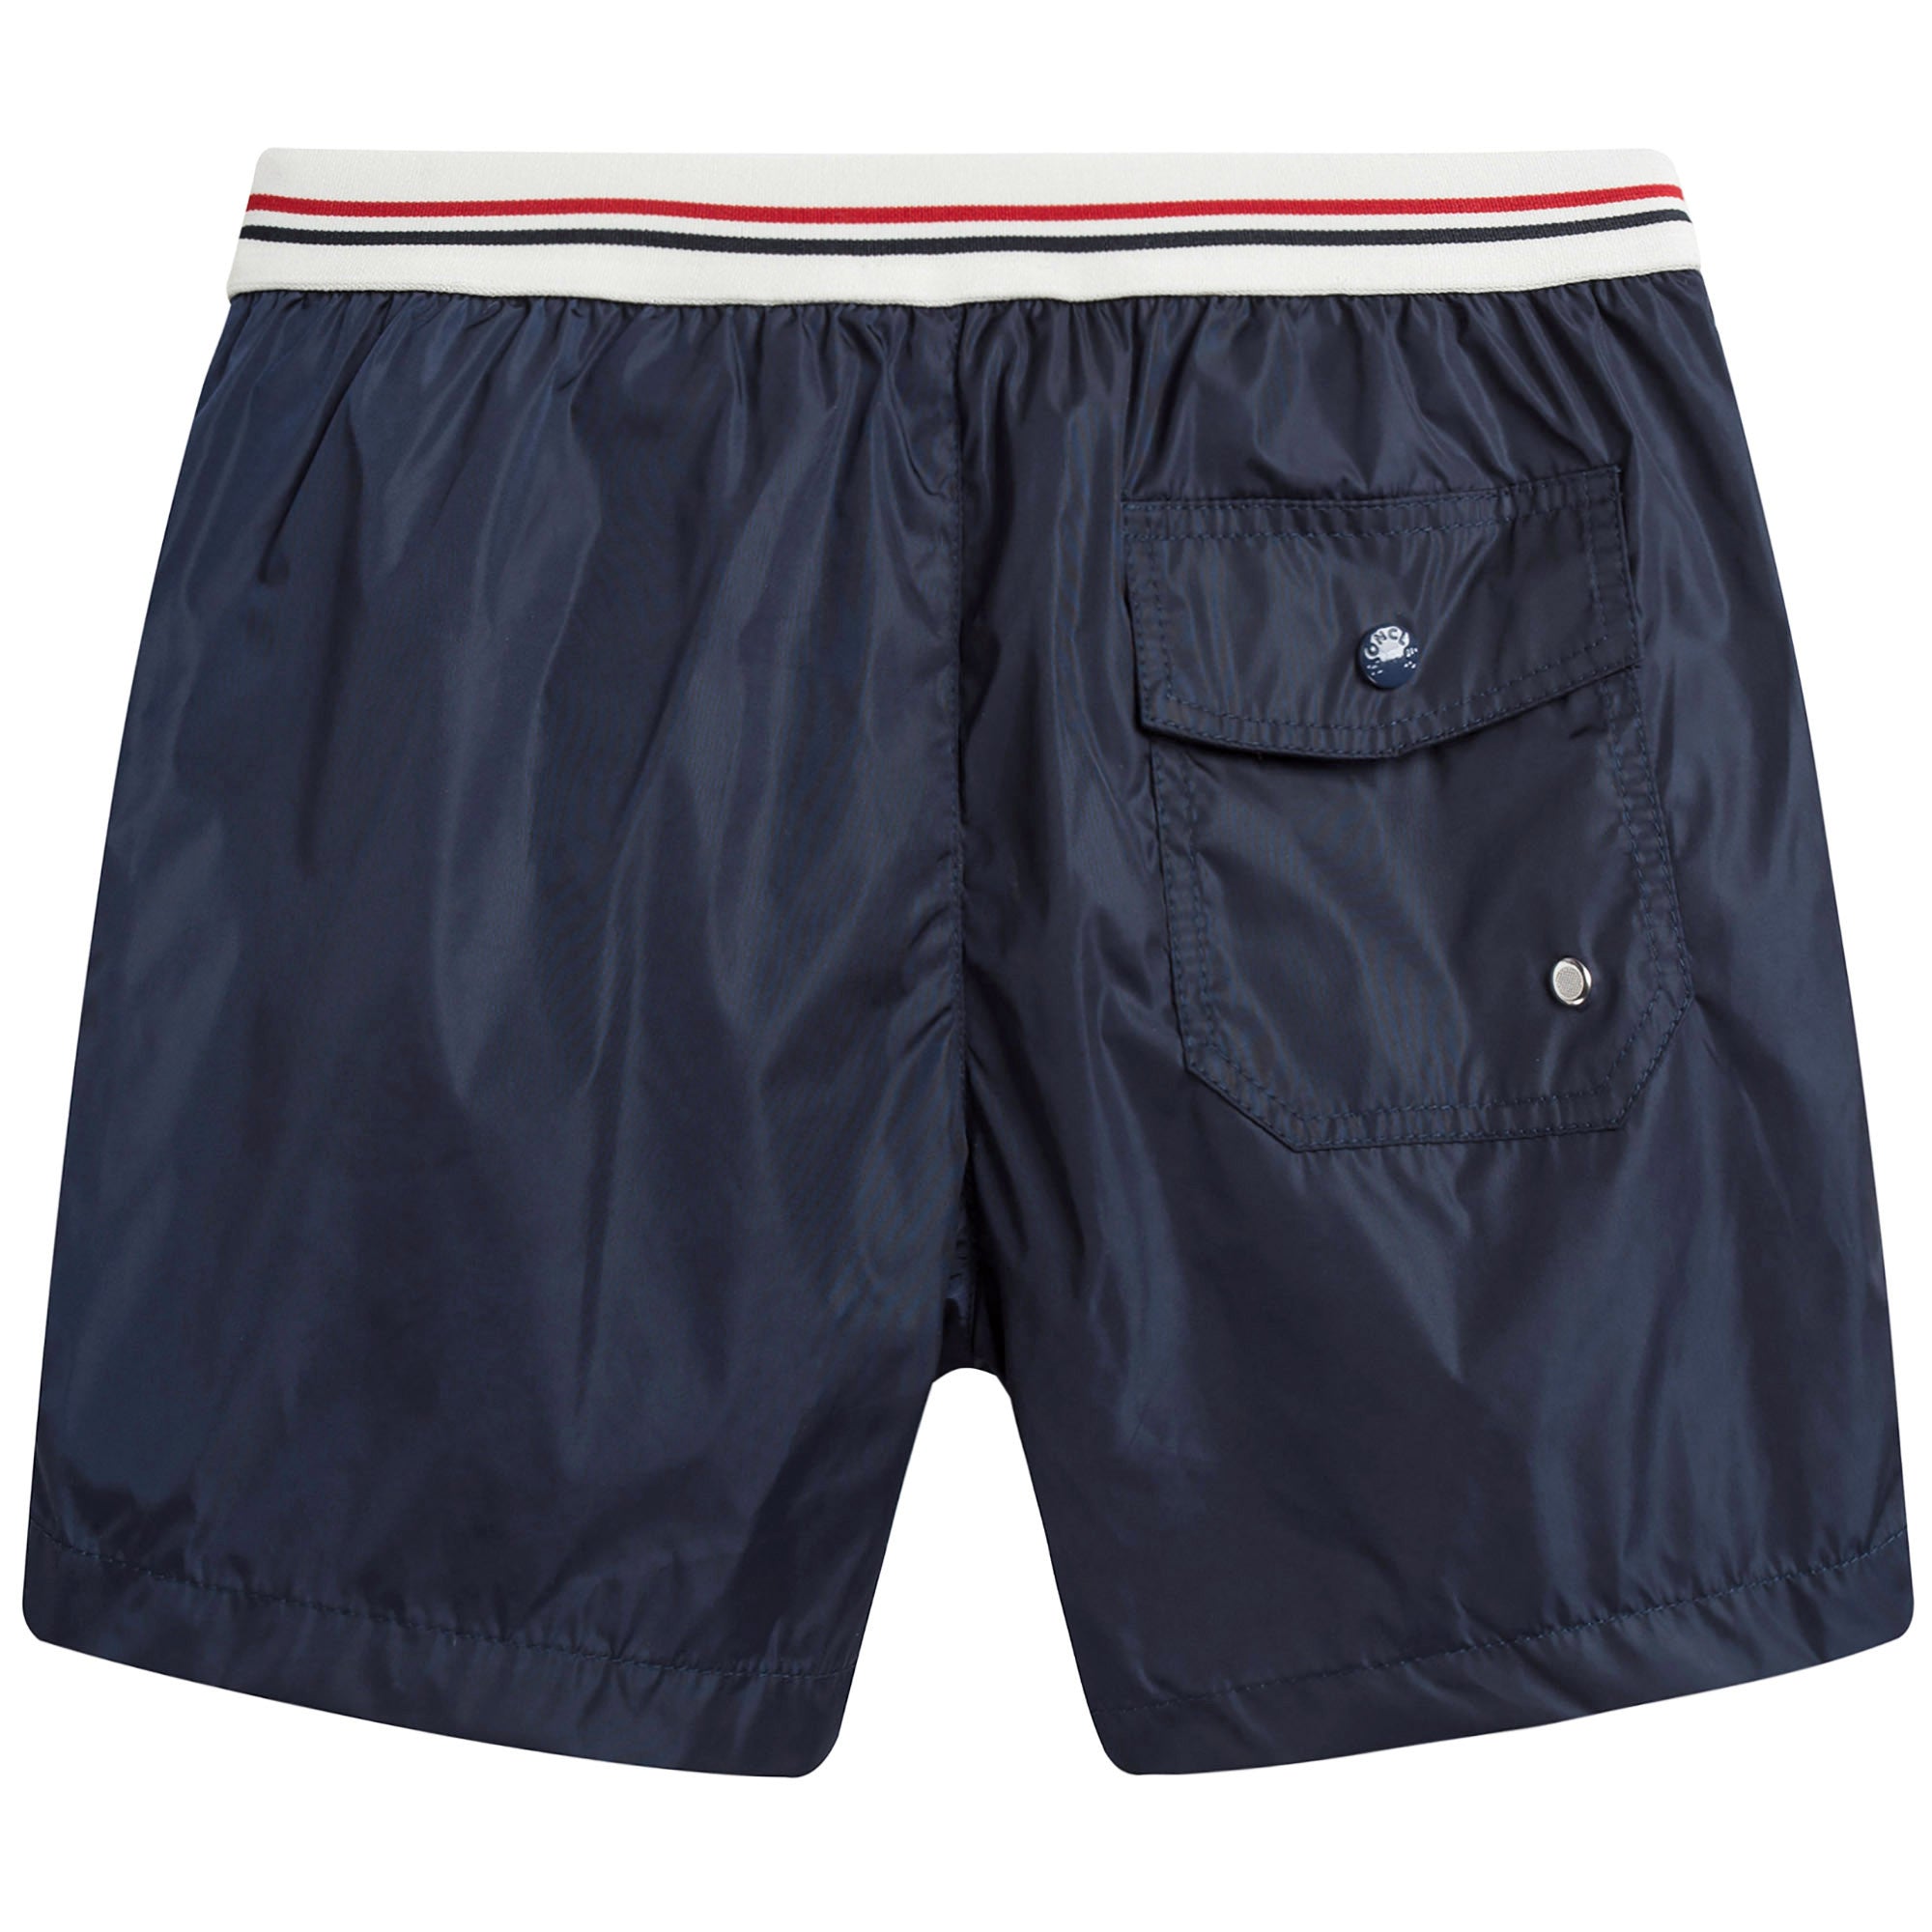 Boys Navy Blue Swim Shorts